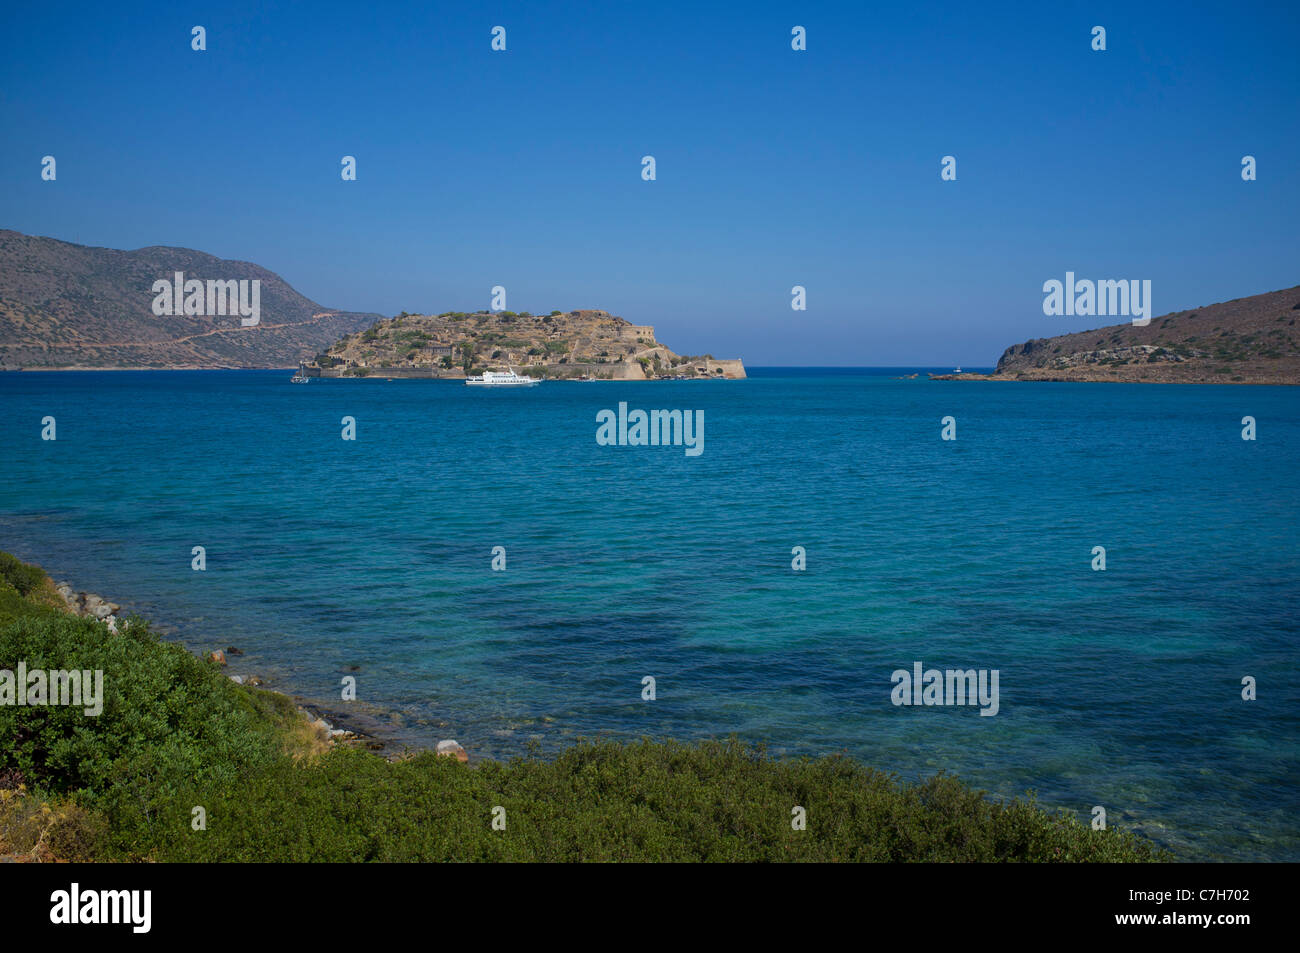 Die ehemaligen Lepra Kolonie Insel Spinalonga auf Kreta ist jetzt ein Urlaub Ausflugsziel für Tausende von Urlauber Stockfoto